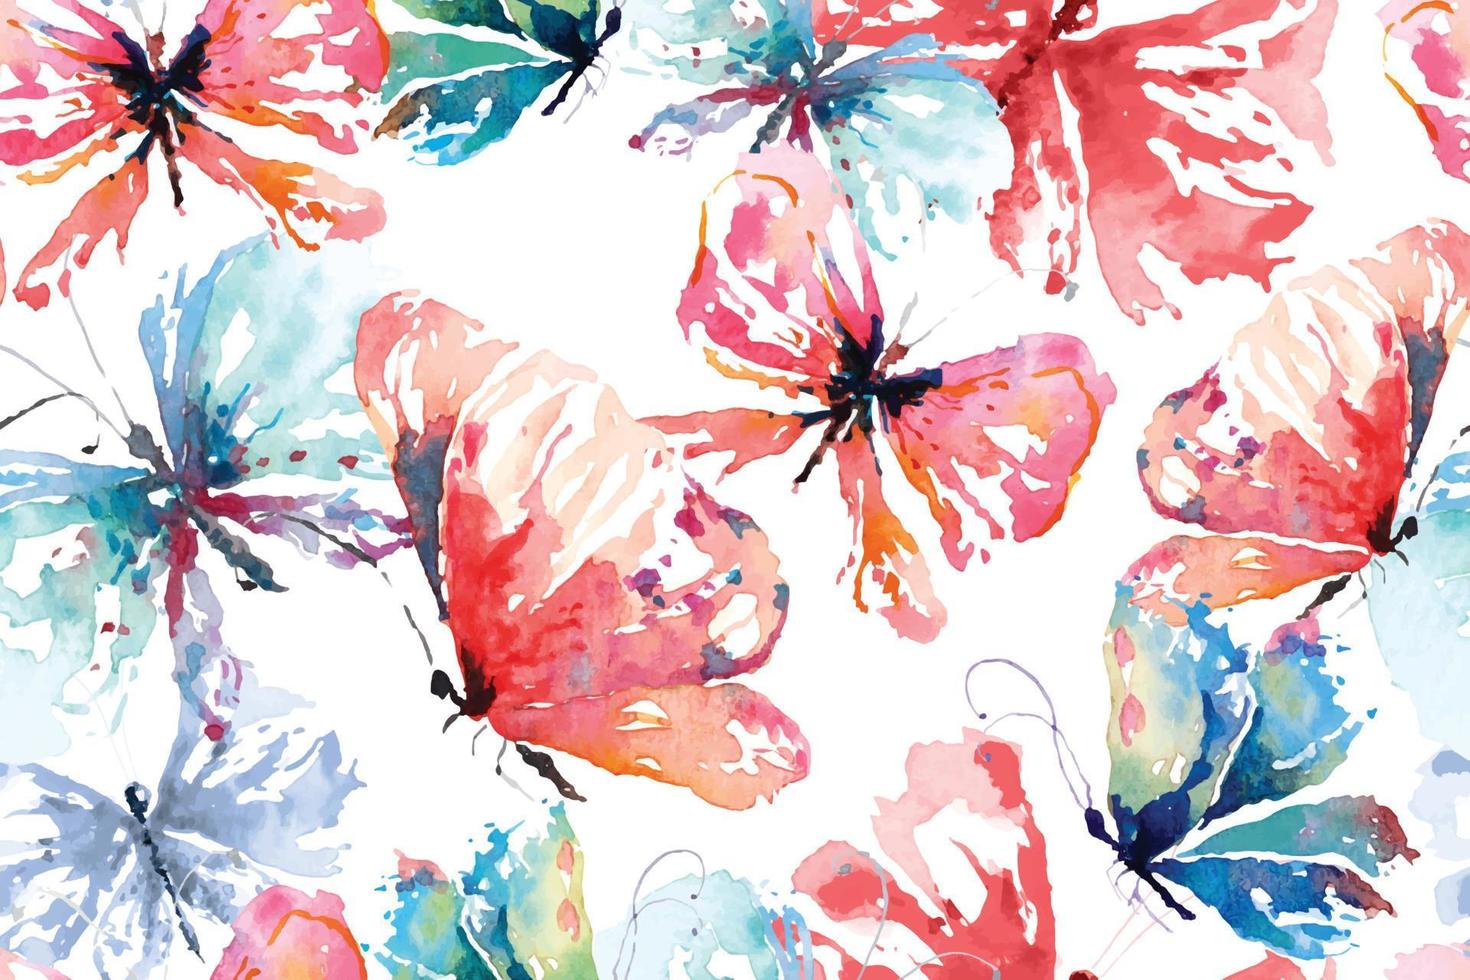 naadloos patroon van vlinders verf met aquarel.voor ontwerpen kleurrijk kleding stof patronen en wallpaper.background abstract fantasie.vliegen insecten achtergrond. vector